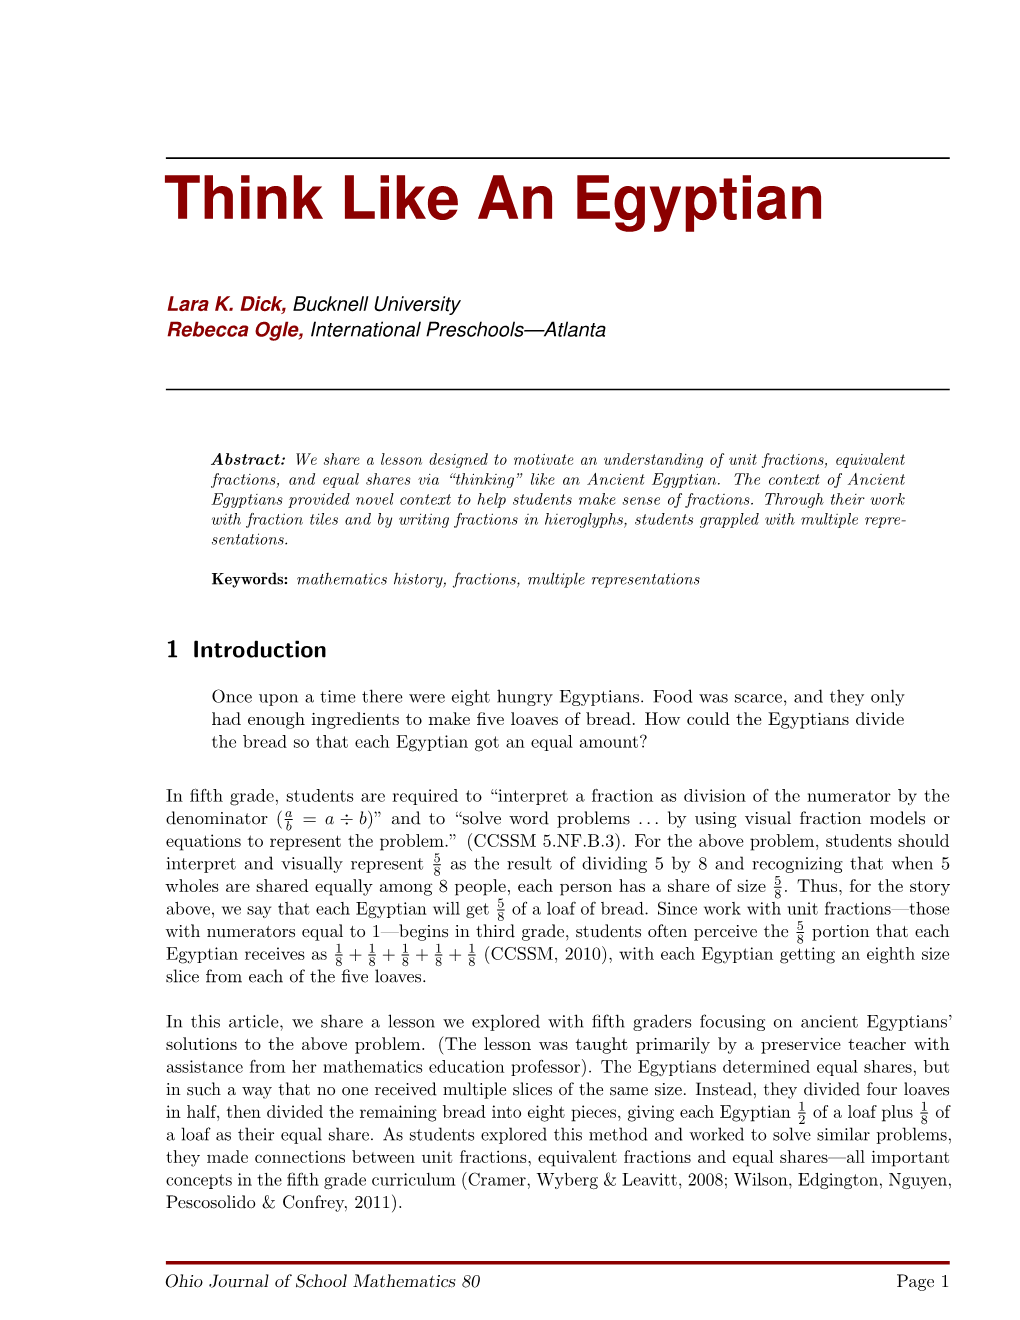 Think Like an Egyptian